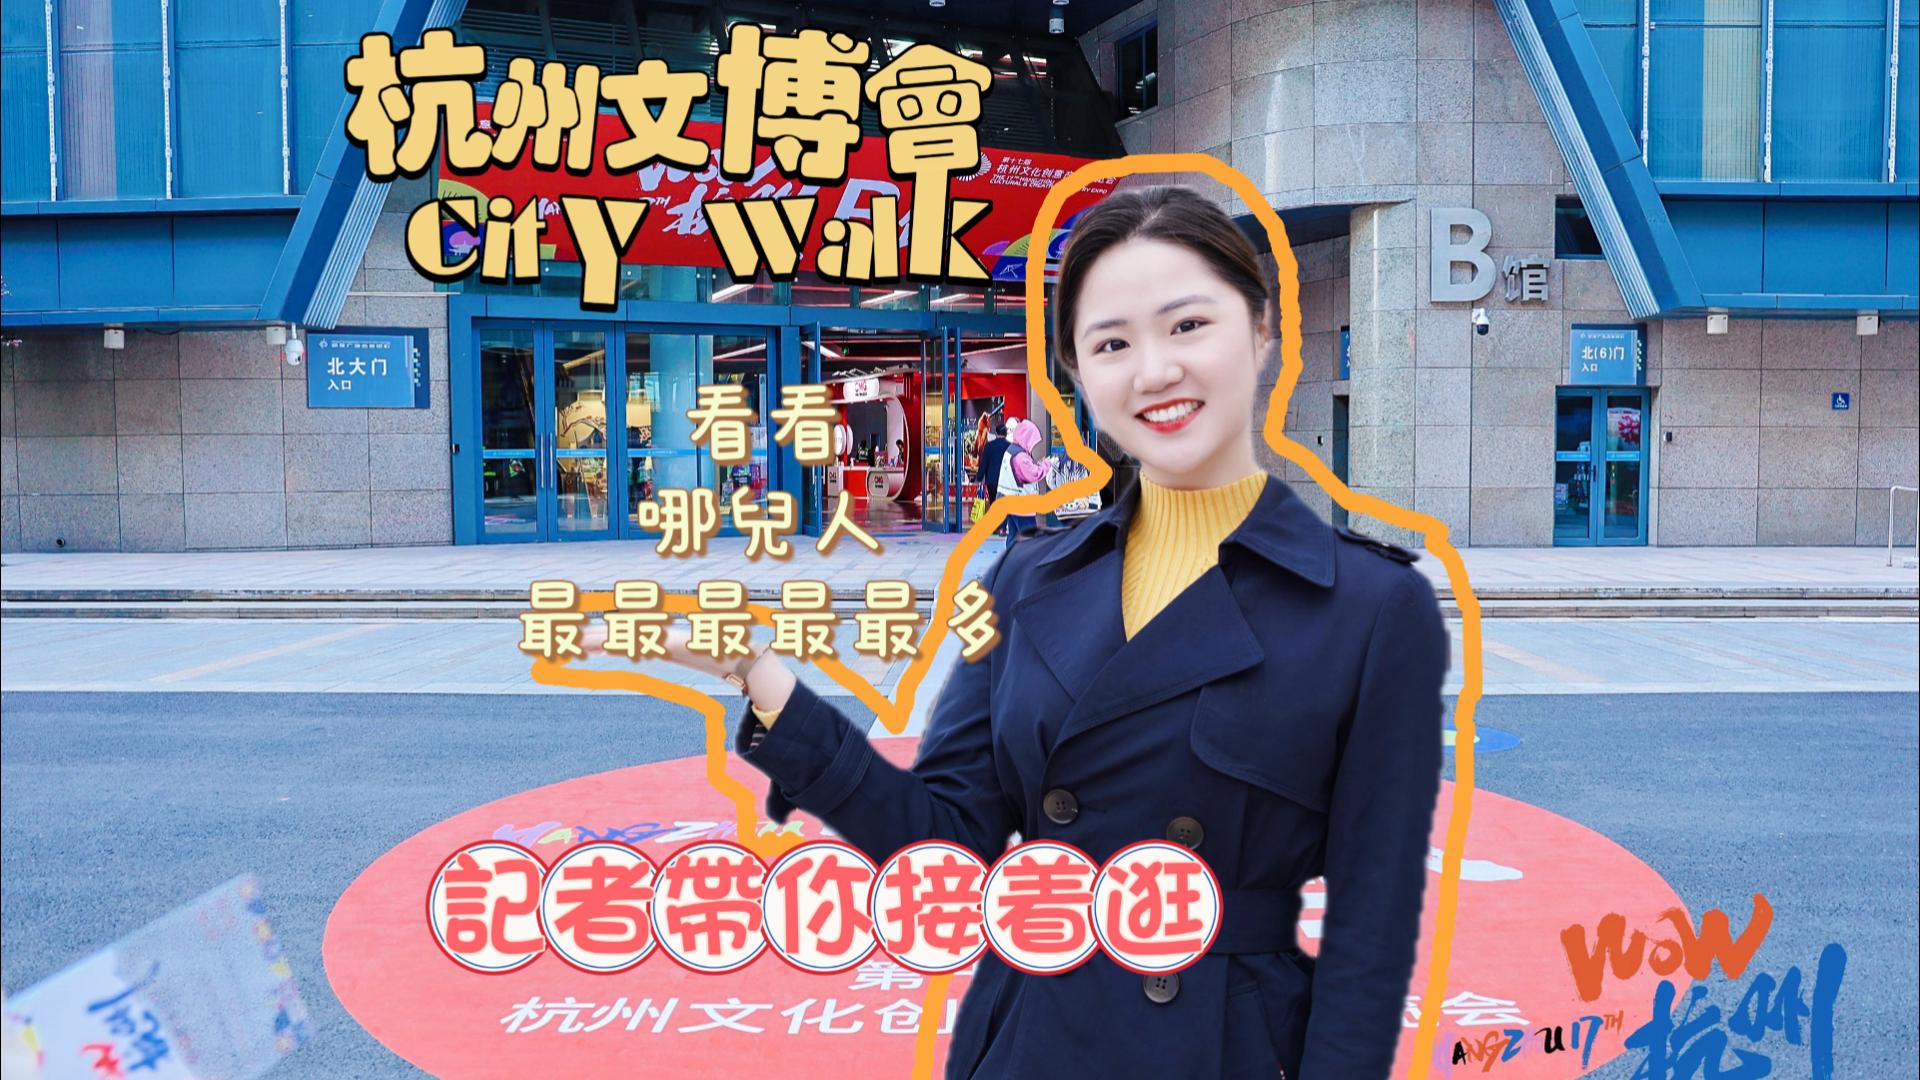 記者探展 來一場微型杭城citywalk